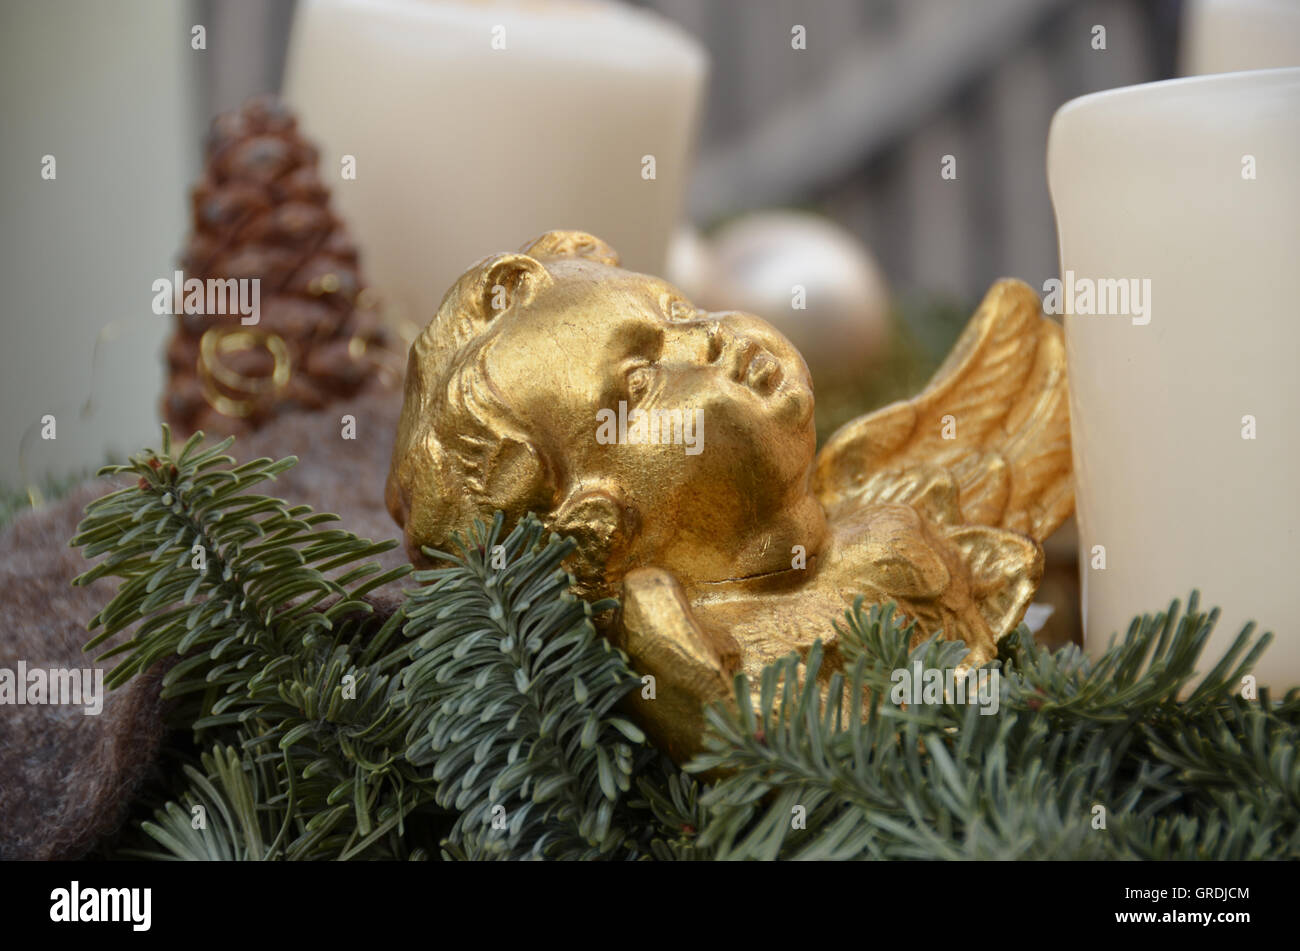 Adventskranz mit Dekoration wie Putto und Kerzen Stockfoto